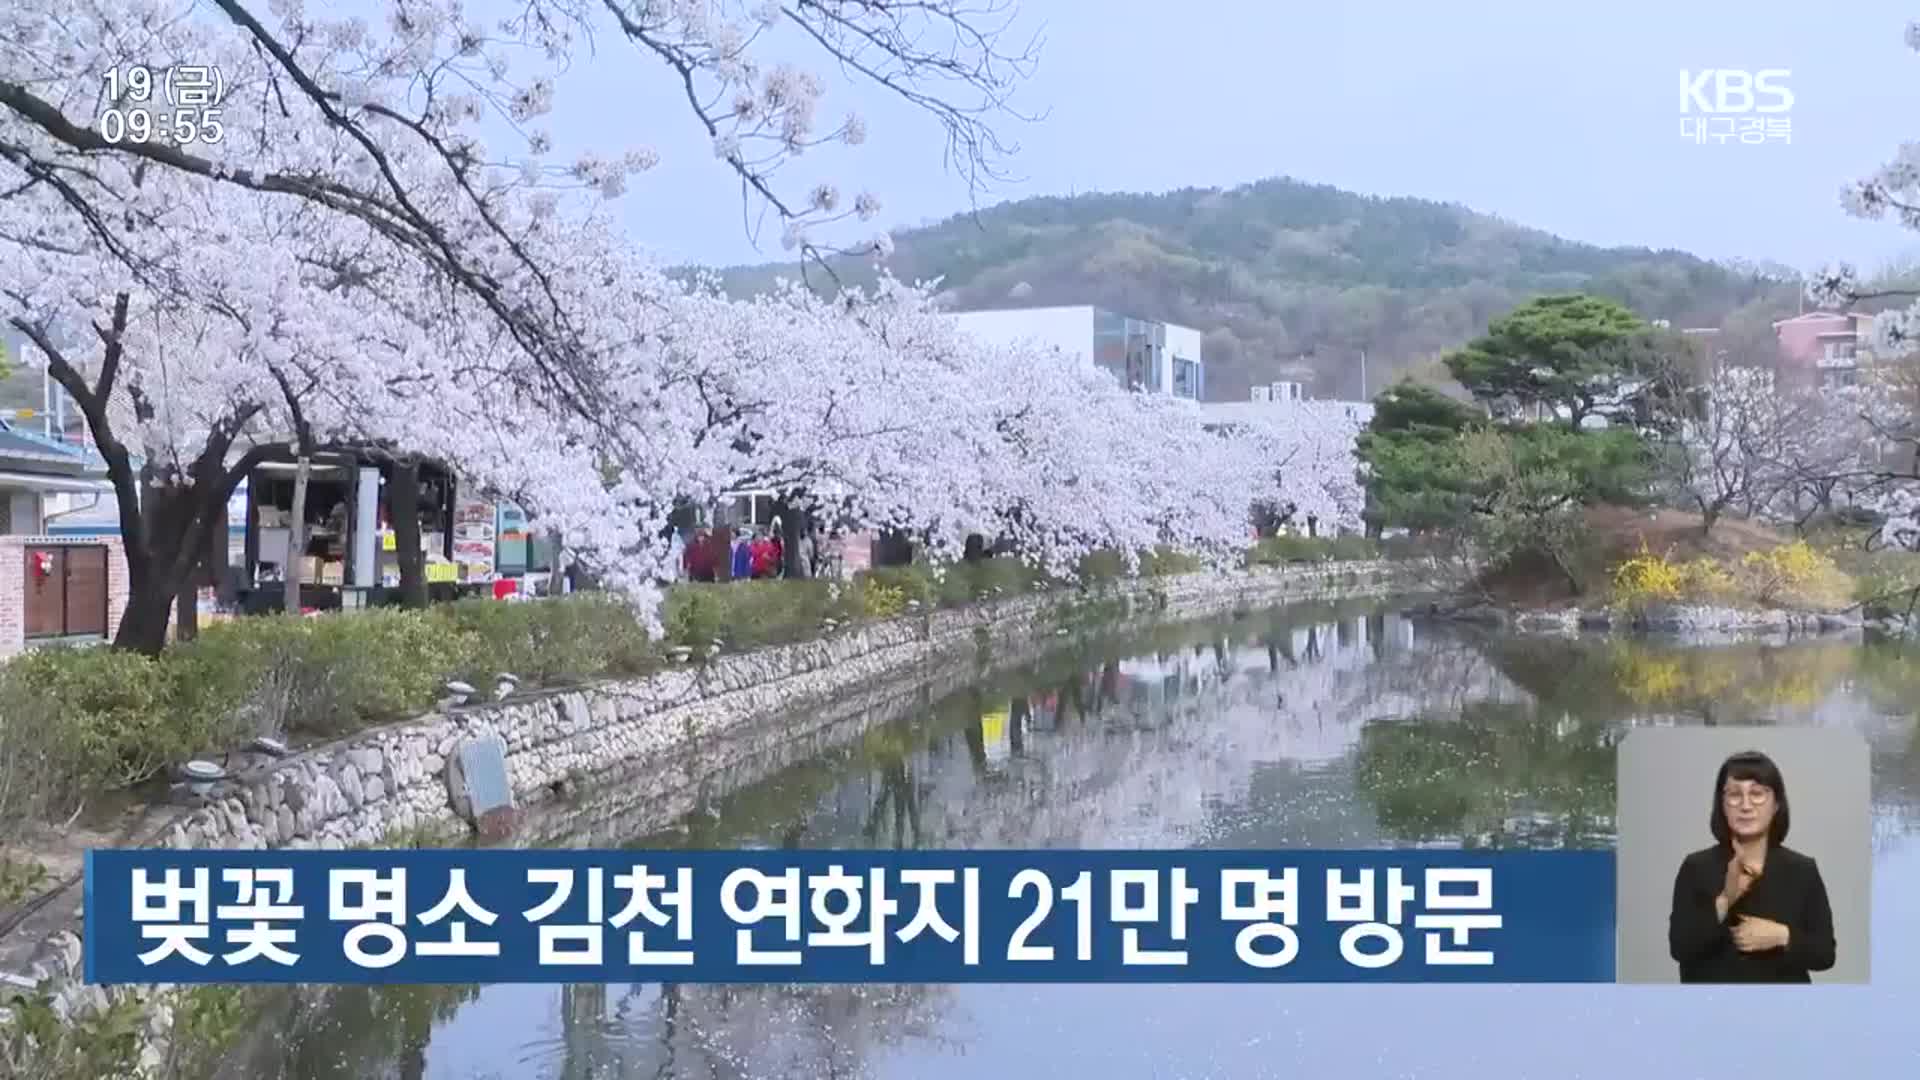 벚꽃 명소 김천 연화지 21만 명 방문